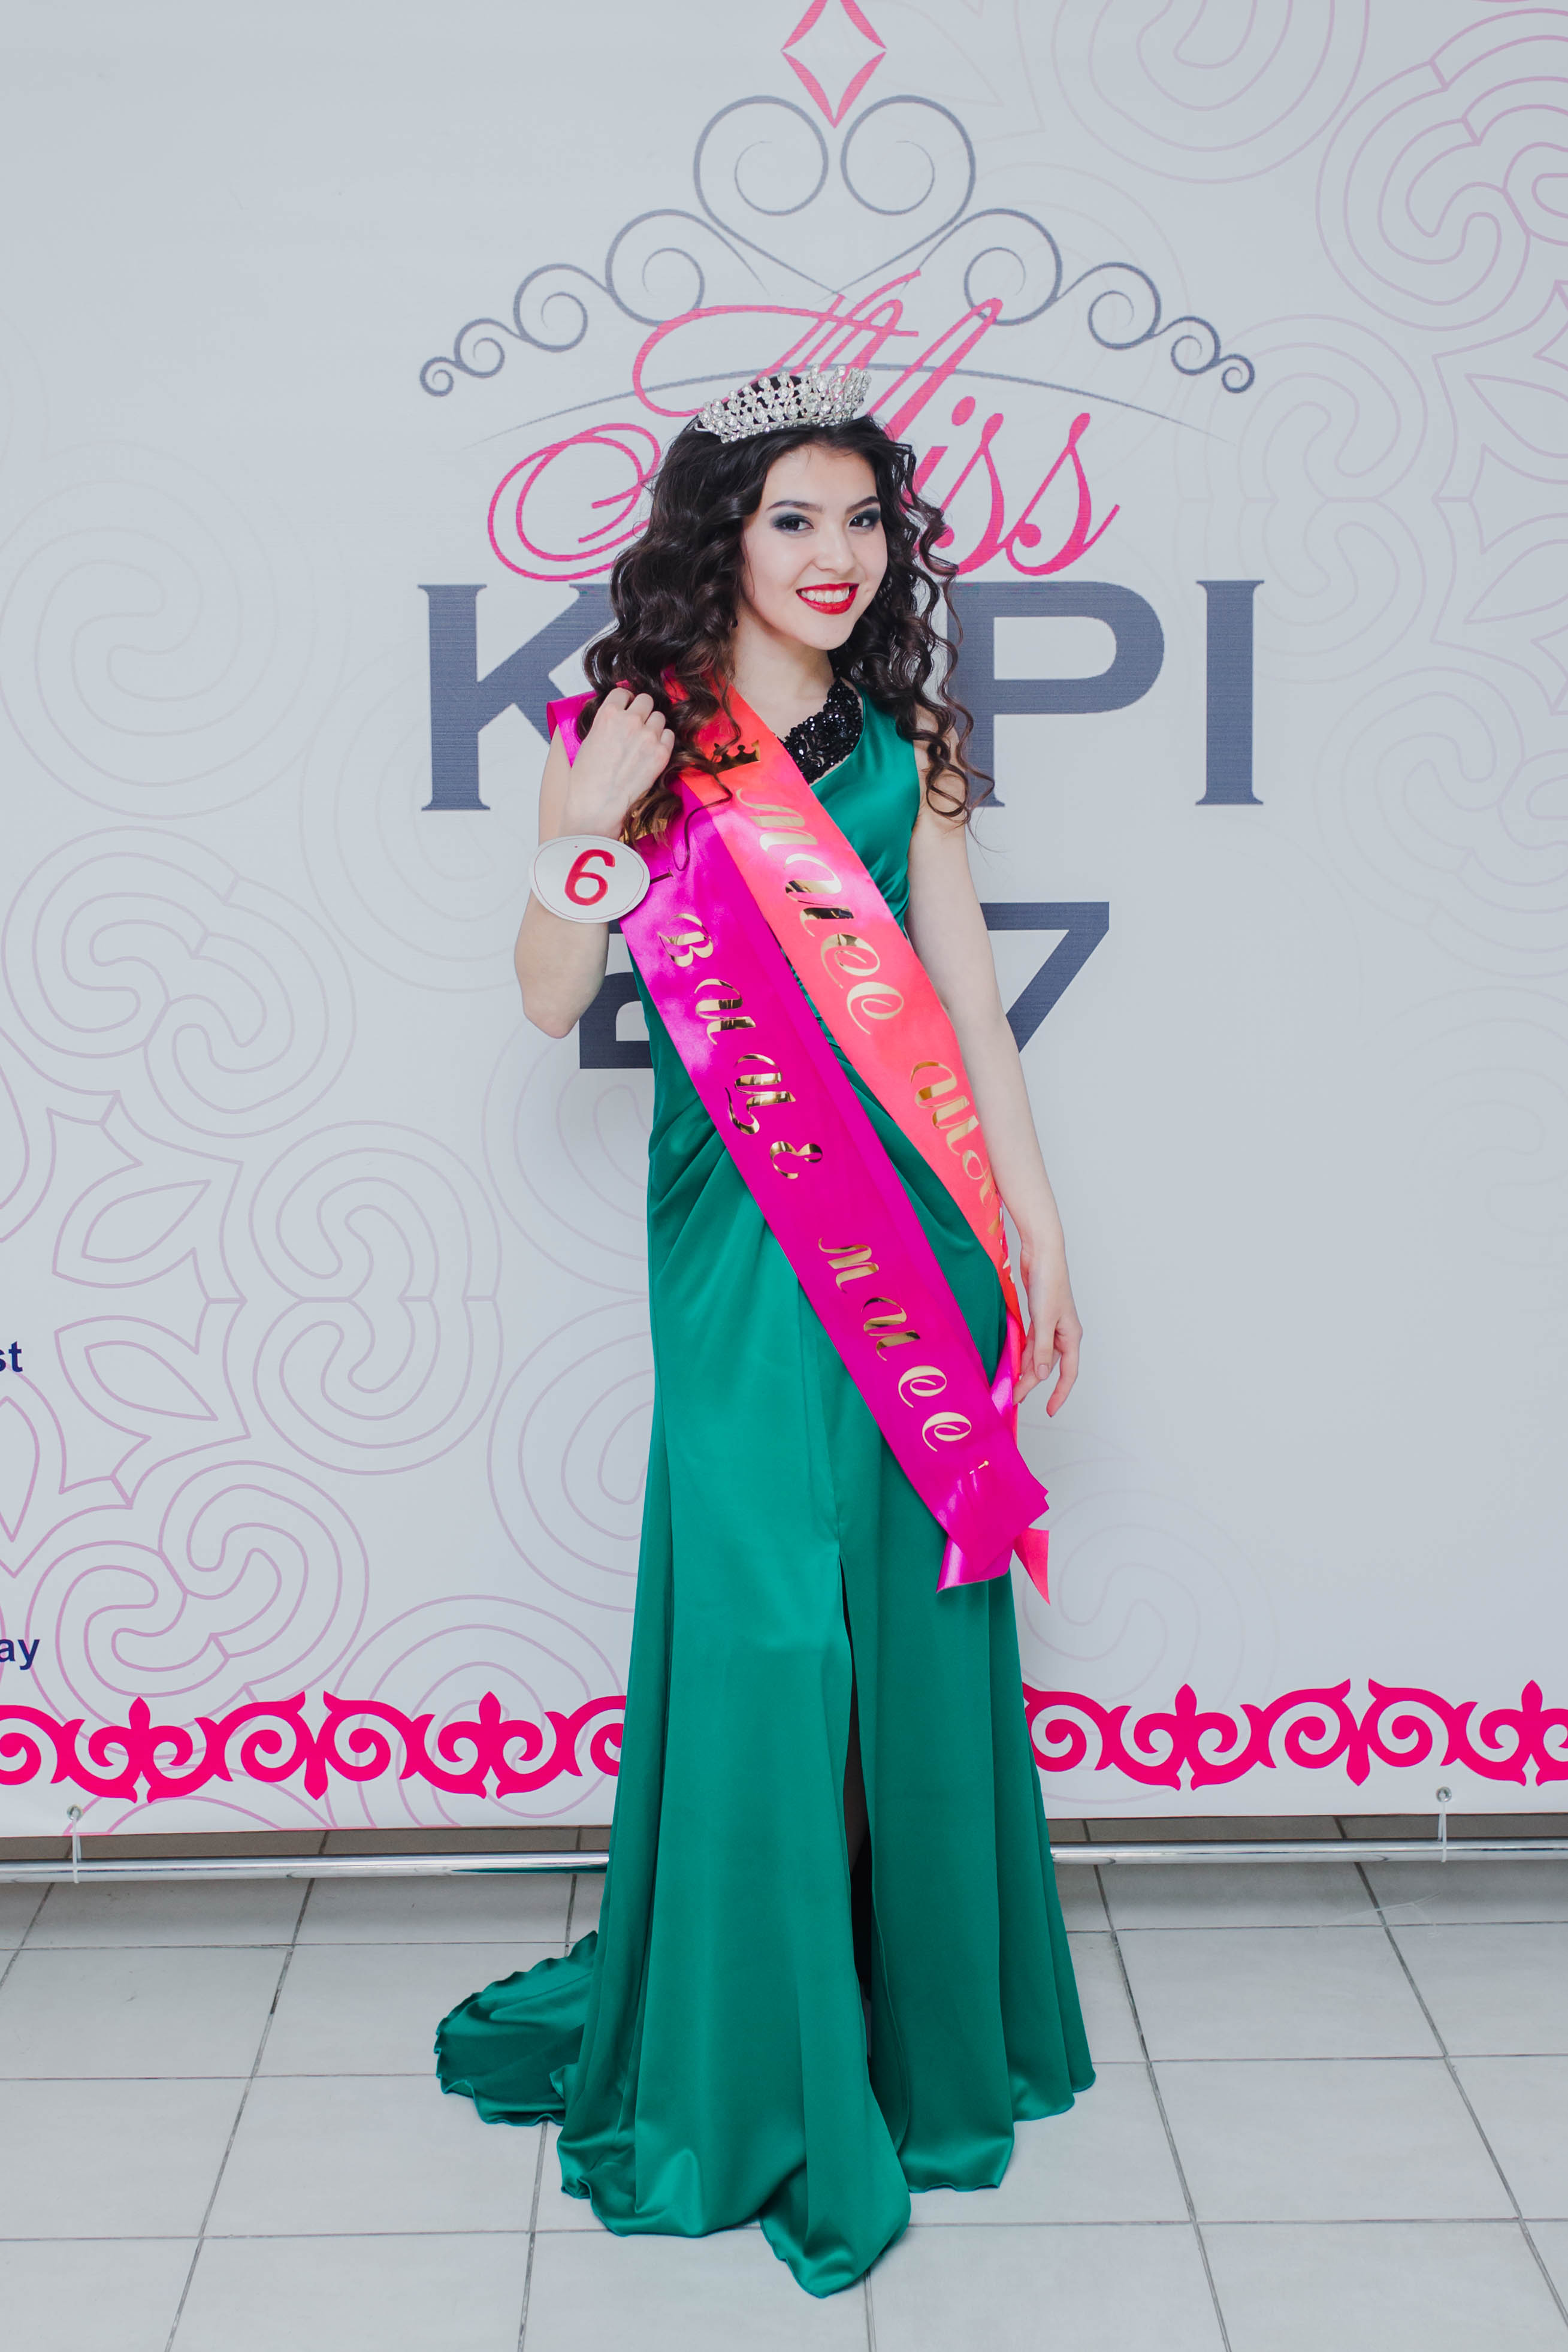 miss kgpi 2017